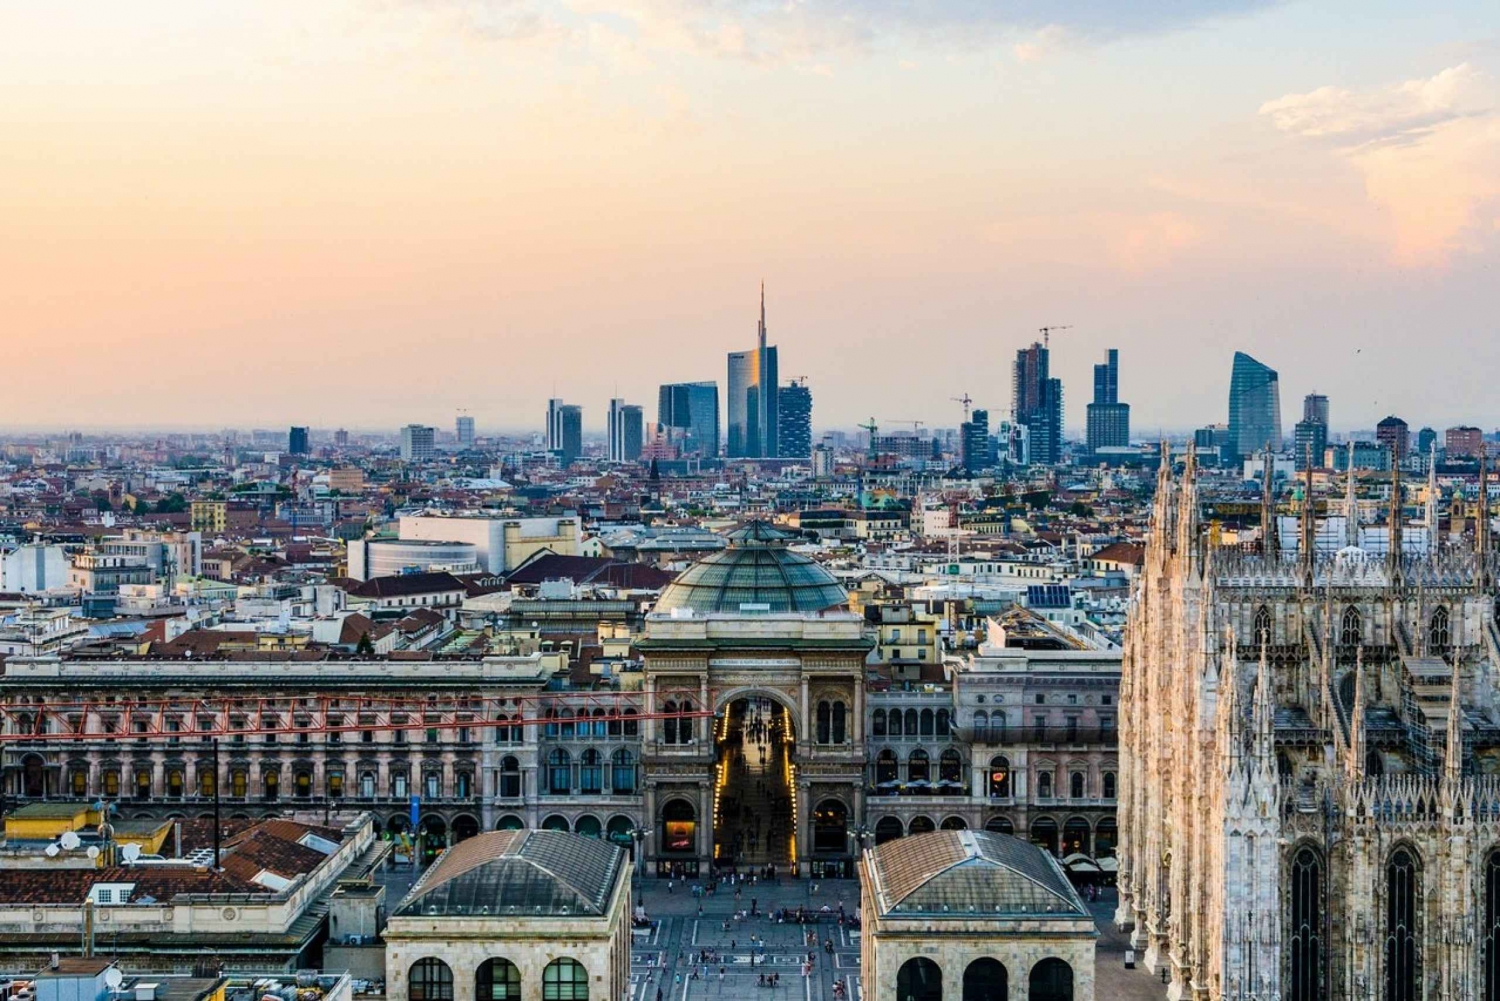 Milan: Iconic Sights Walking Tour with Milan Cathedral